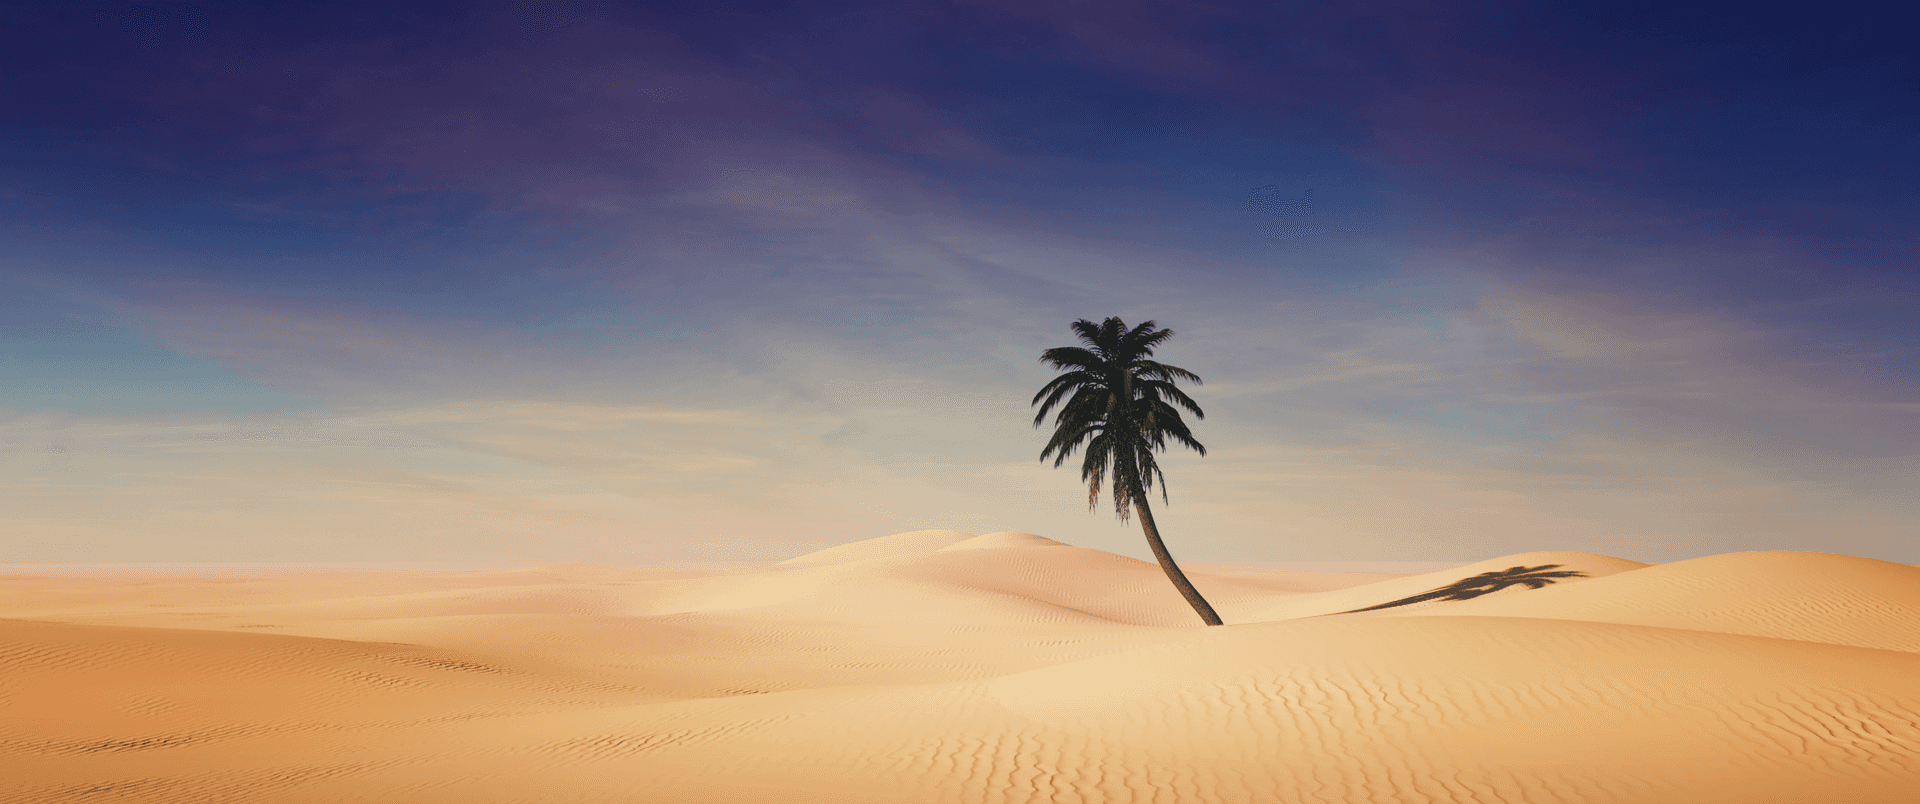 Envidstrakt Sandstrand Strækker Sig Ud Med Et Overflødighedshorn Af Muslingeskaller, Der Venter På At Blive Udforsket.